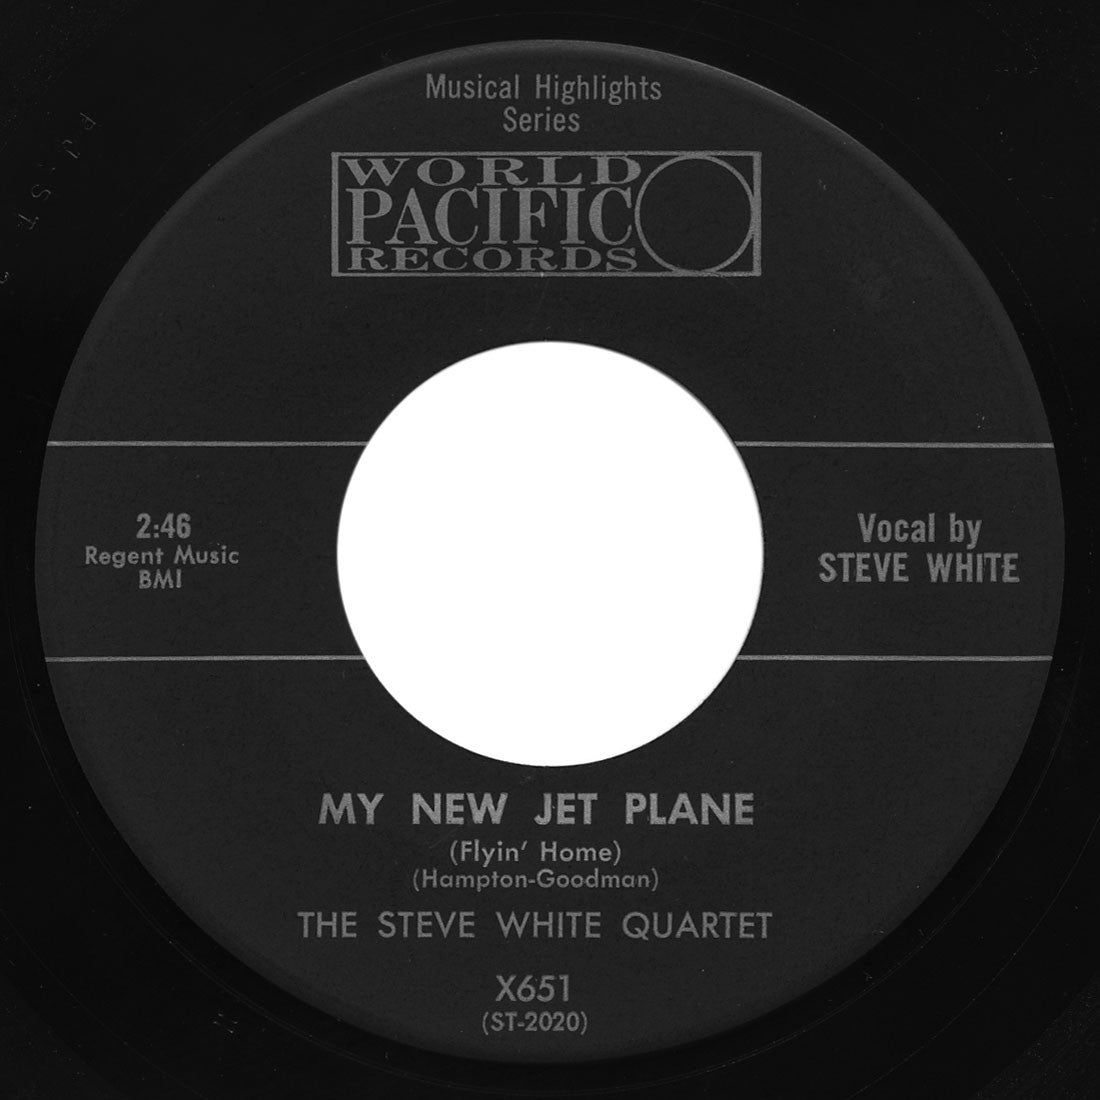 Steve White Quartet – My New Jet Plane (Flyin’ Home)